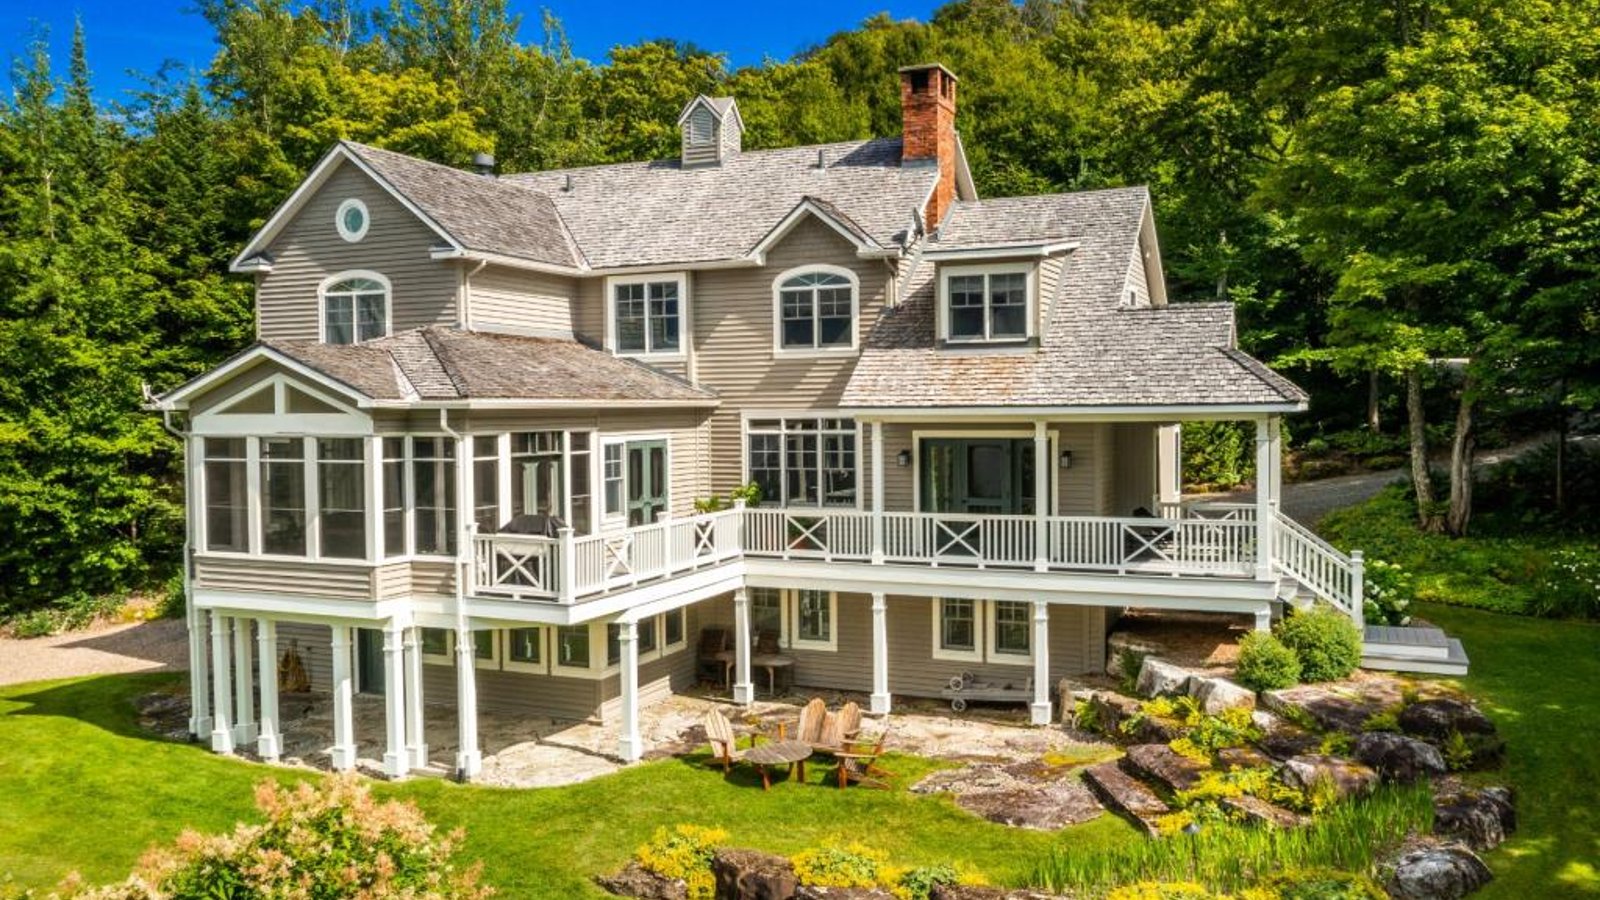 Majestueuse demeure de style Nouvelle-Angleterre invitant à la sérénité sur son paisible terrain boisé bordant un lac